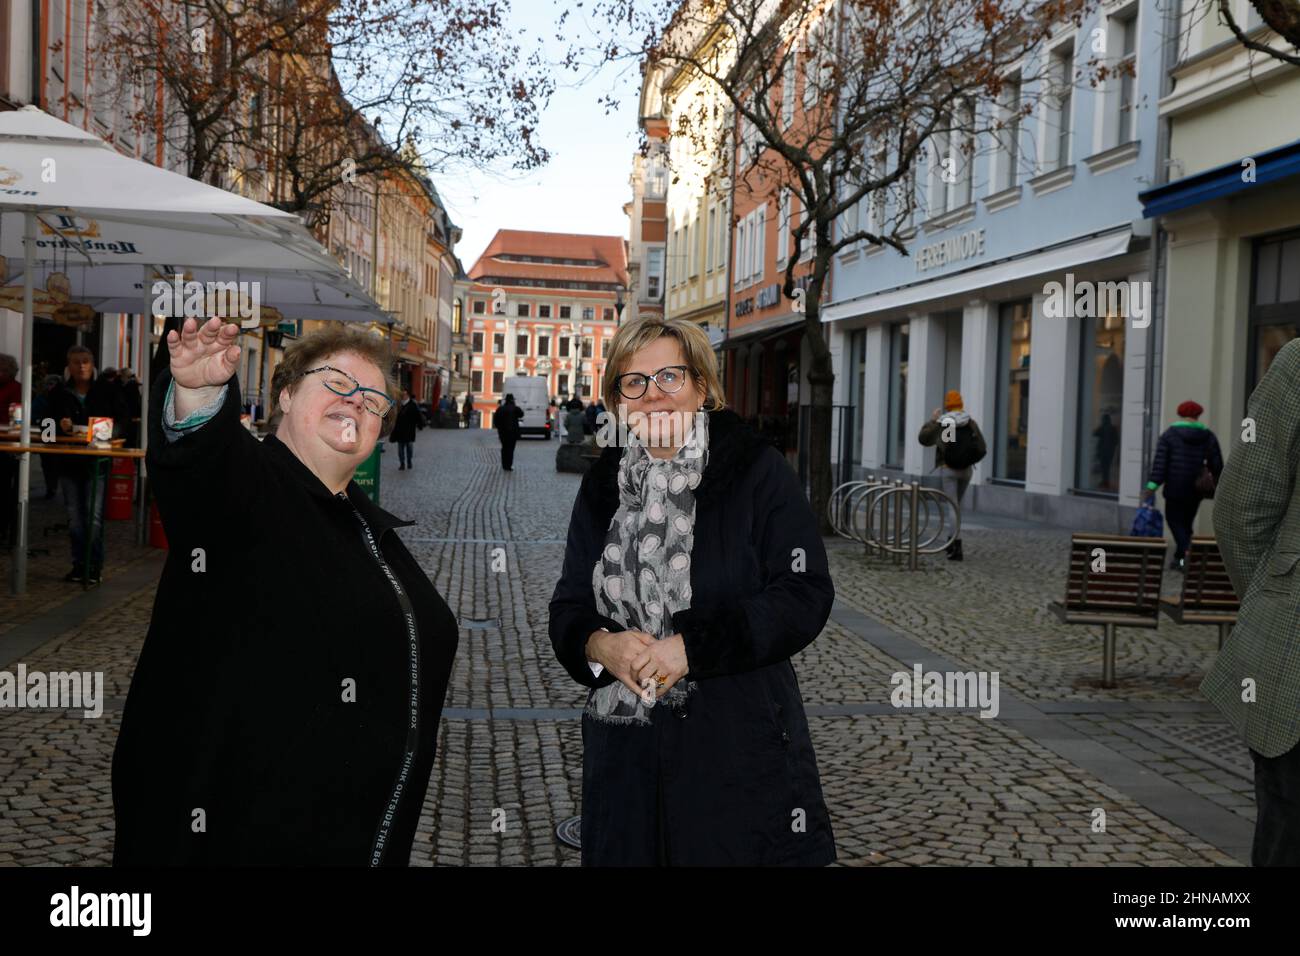 Im Bild: Renate Peter und Barbara Klepsch. Kultur- und Tourismusministerin Barbara Klepsch besucht die Stadtführerin Renate Peter, um sich ein Bild üb Stock Photo